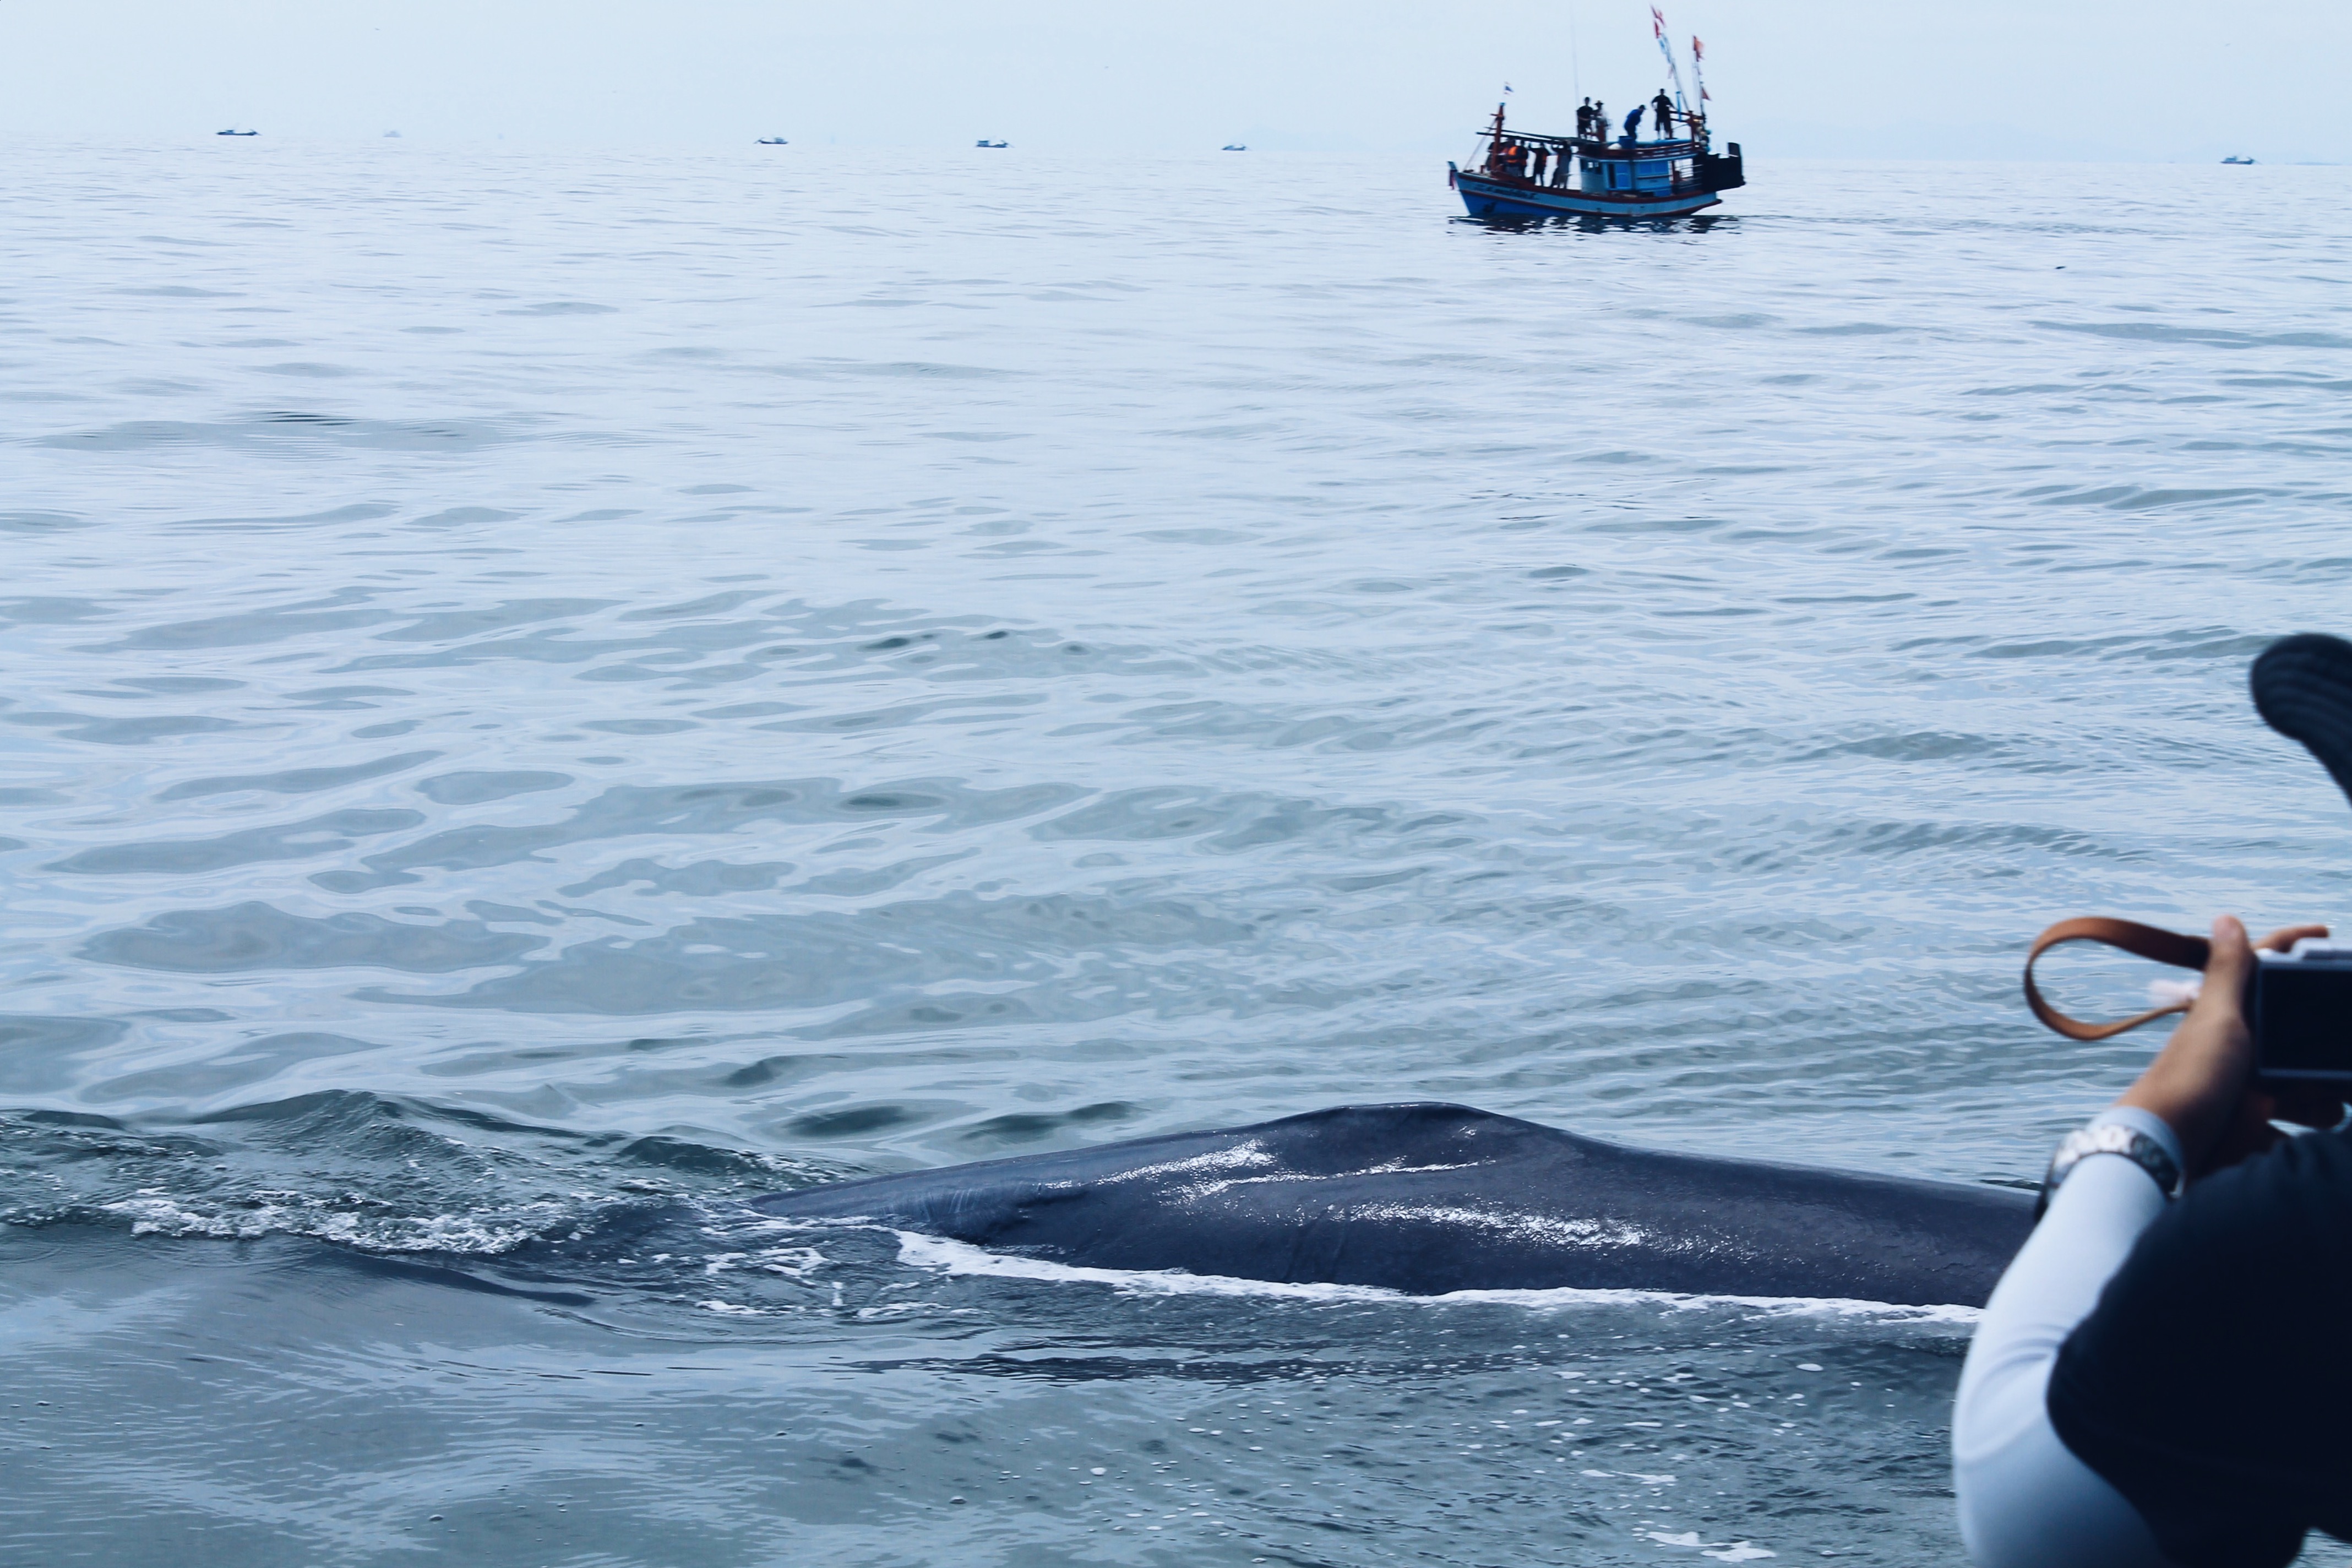 เที่ยวเพชรบุรีปลายปี กินหอย ดูปลาวาฬ ชมพระอาทิตย์ขึ้น สุดฟิน!